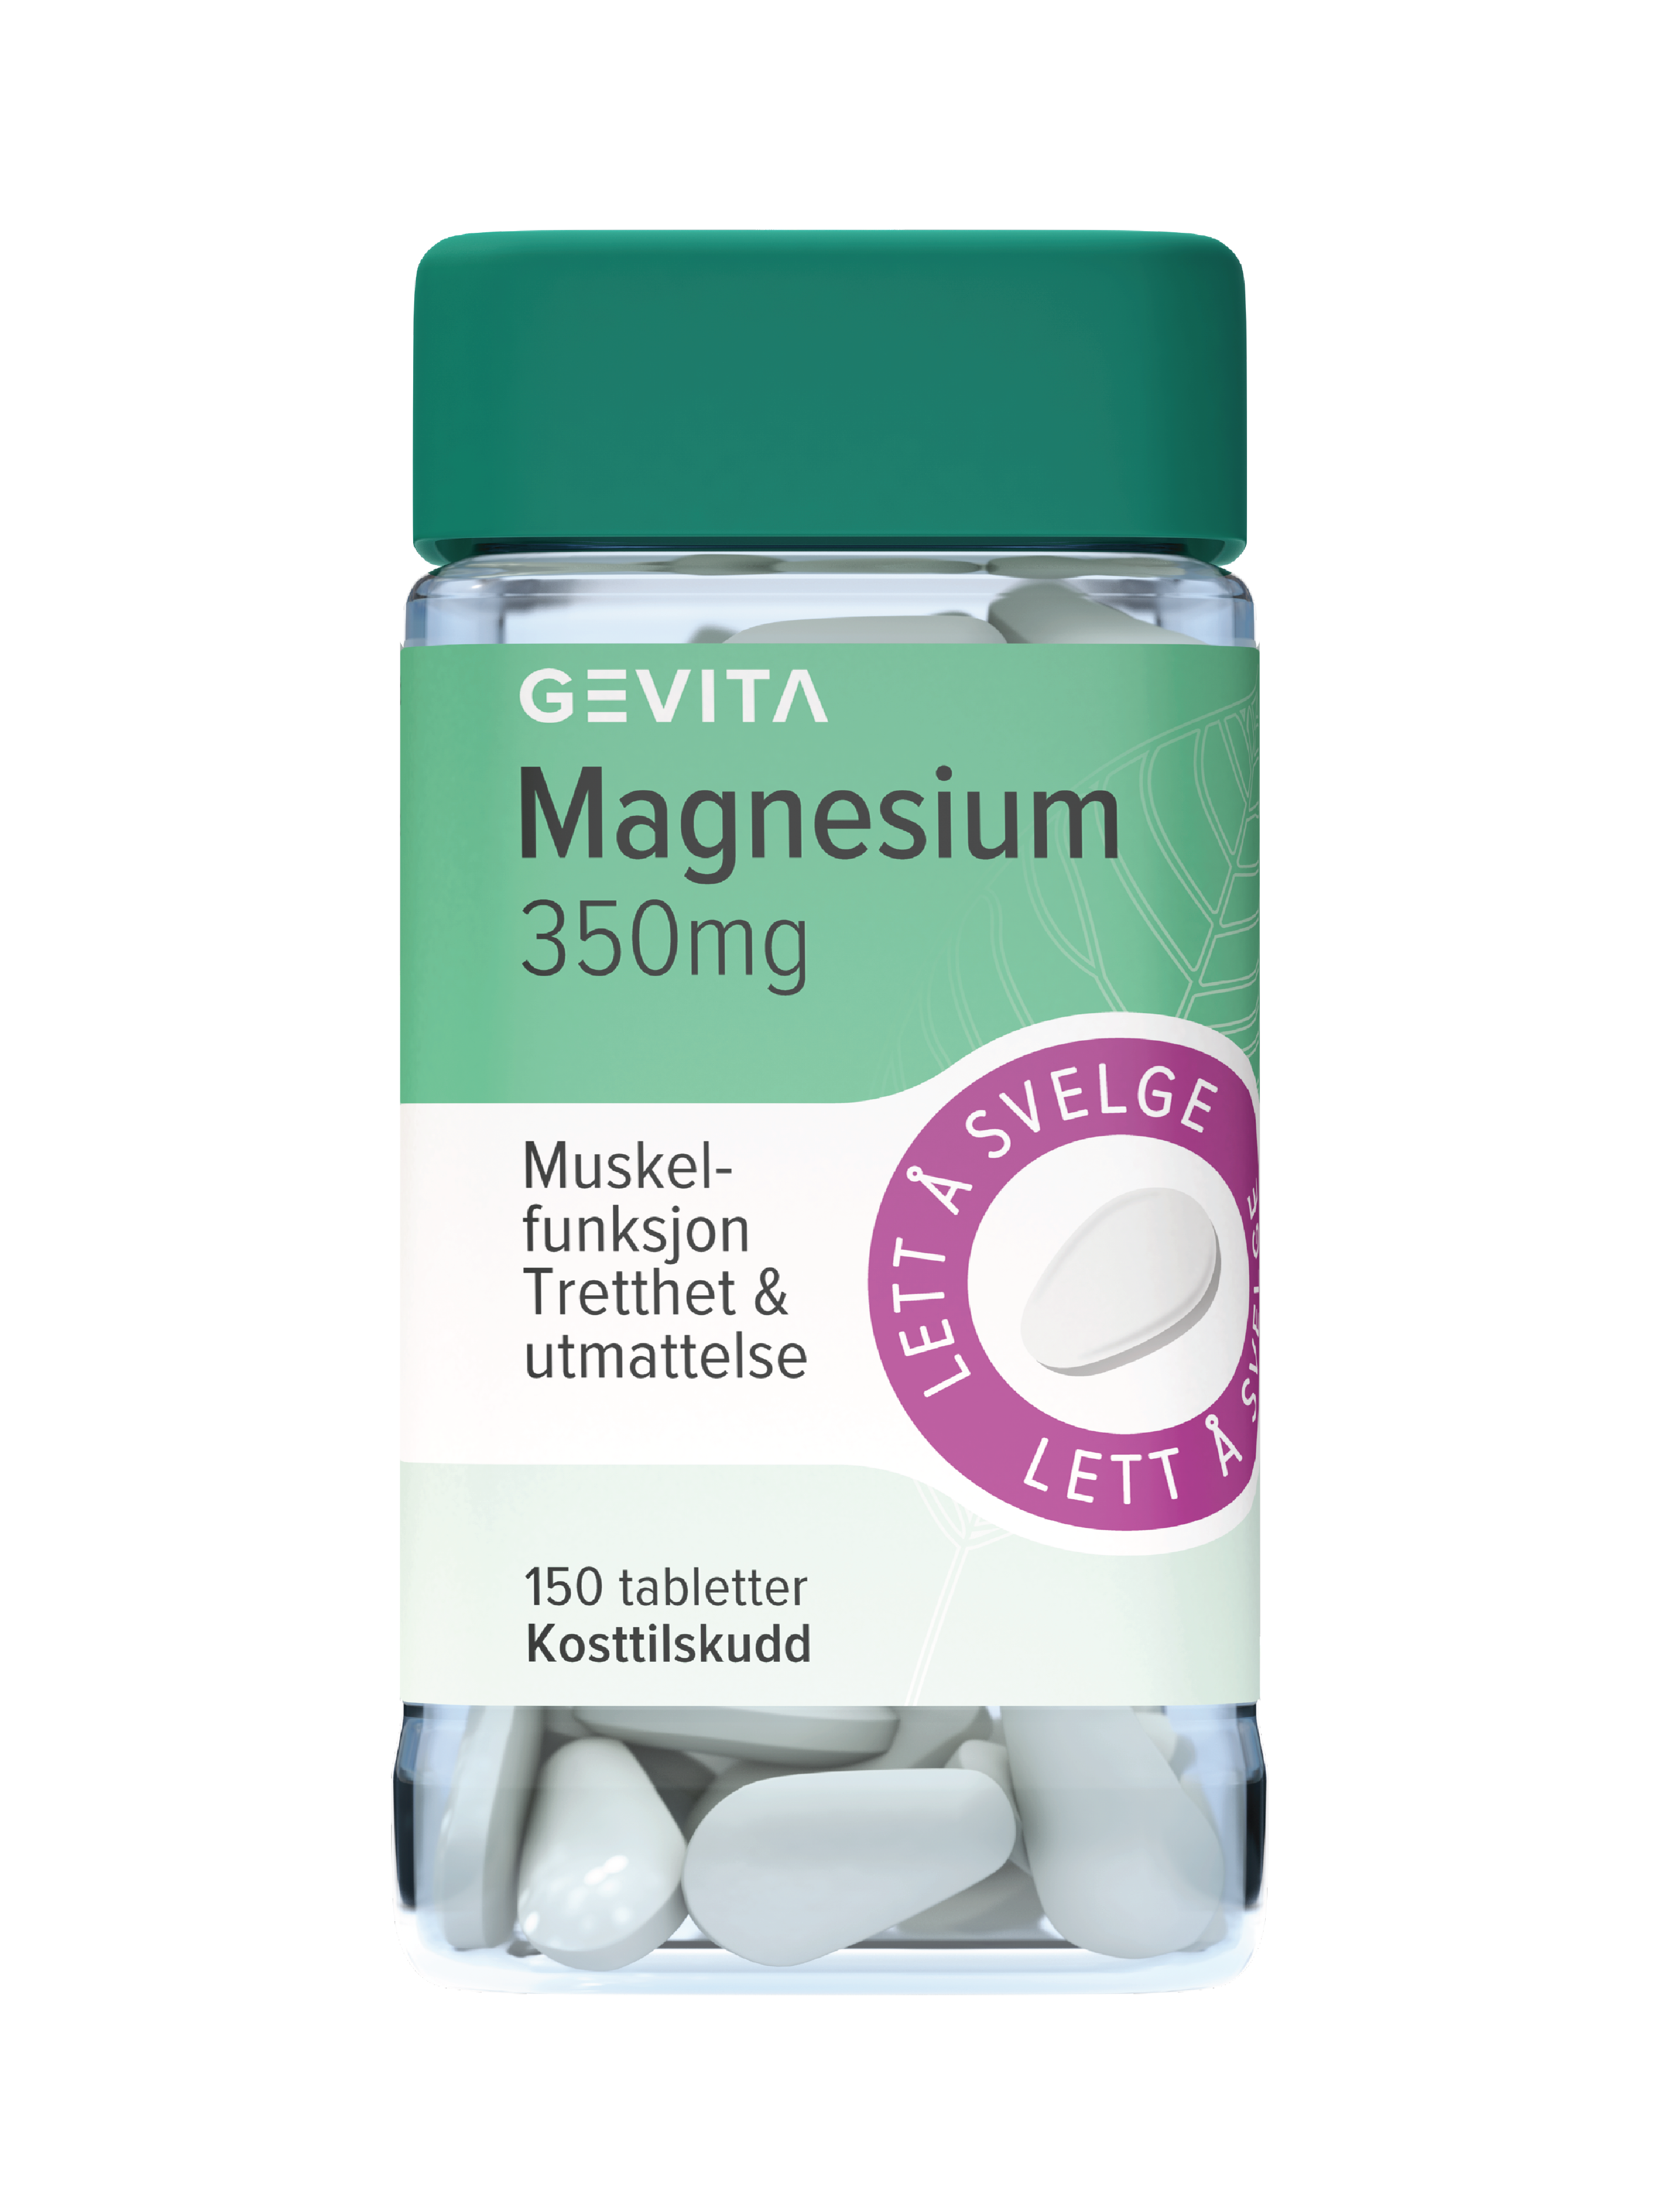 Gevita Magnesium 350mg, 150 tabletter